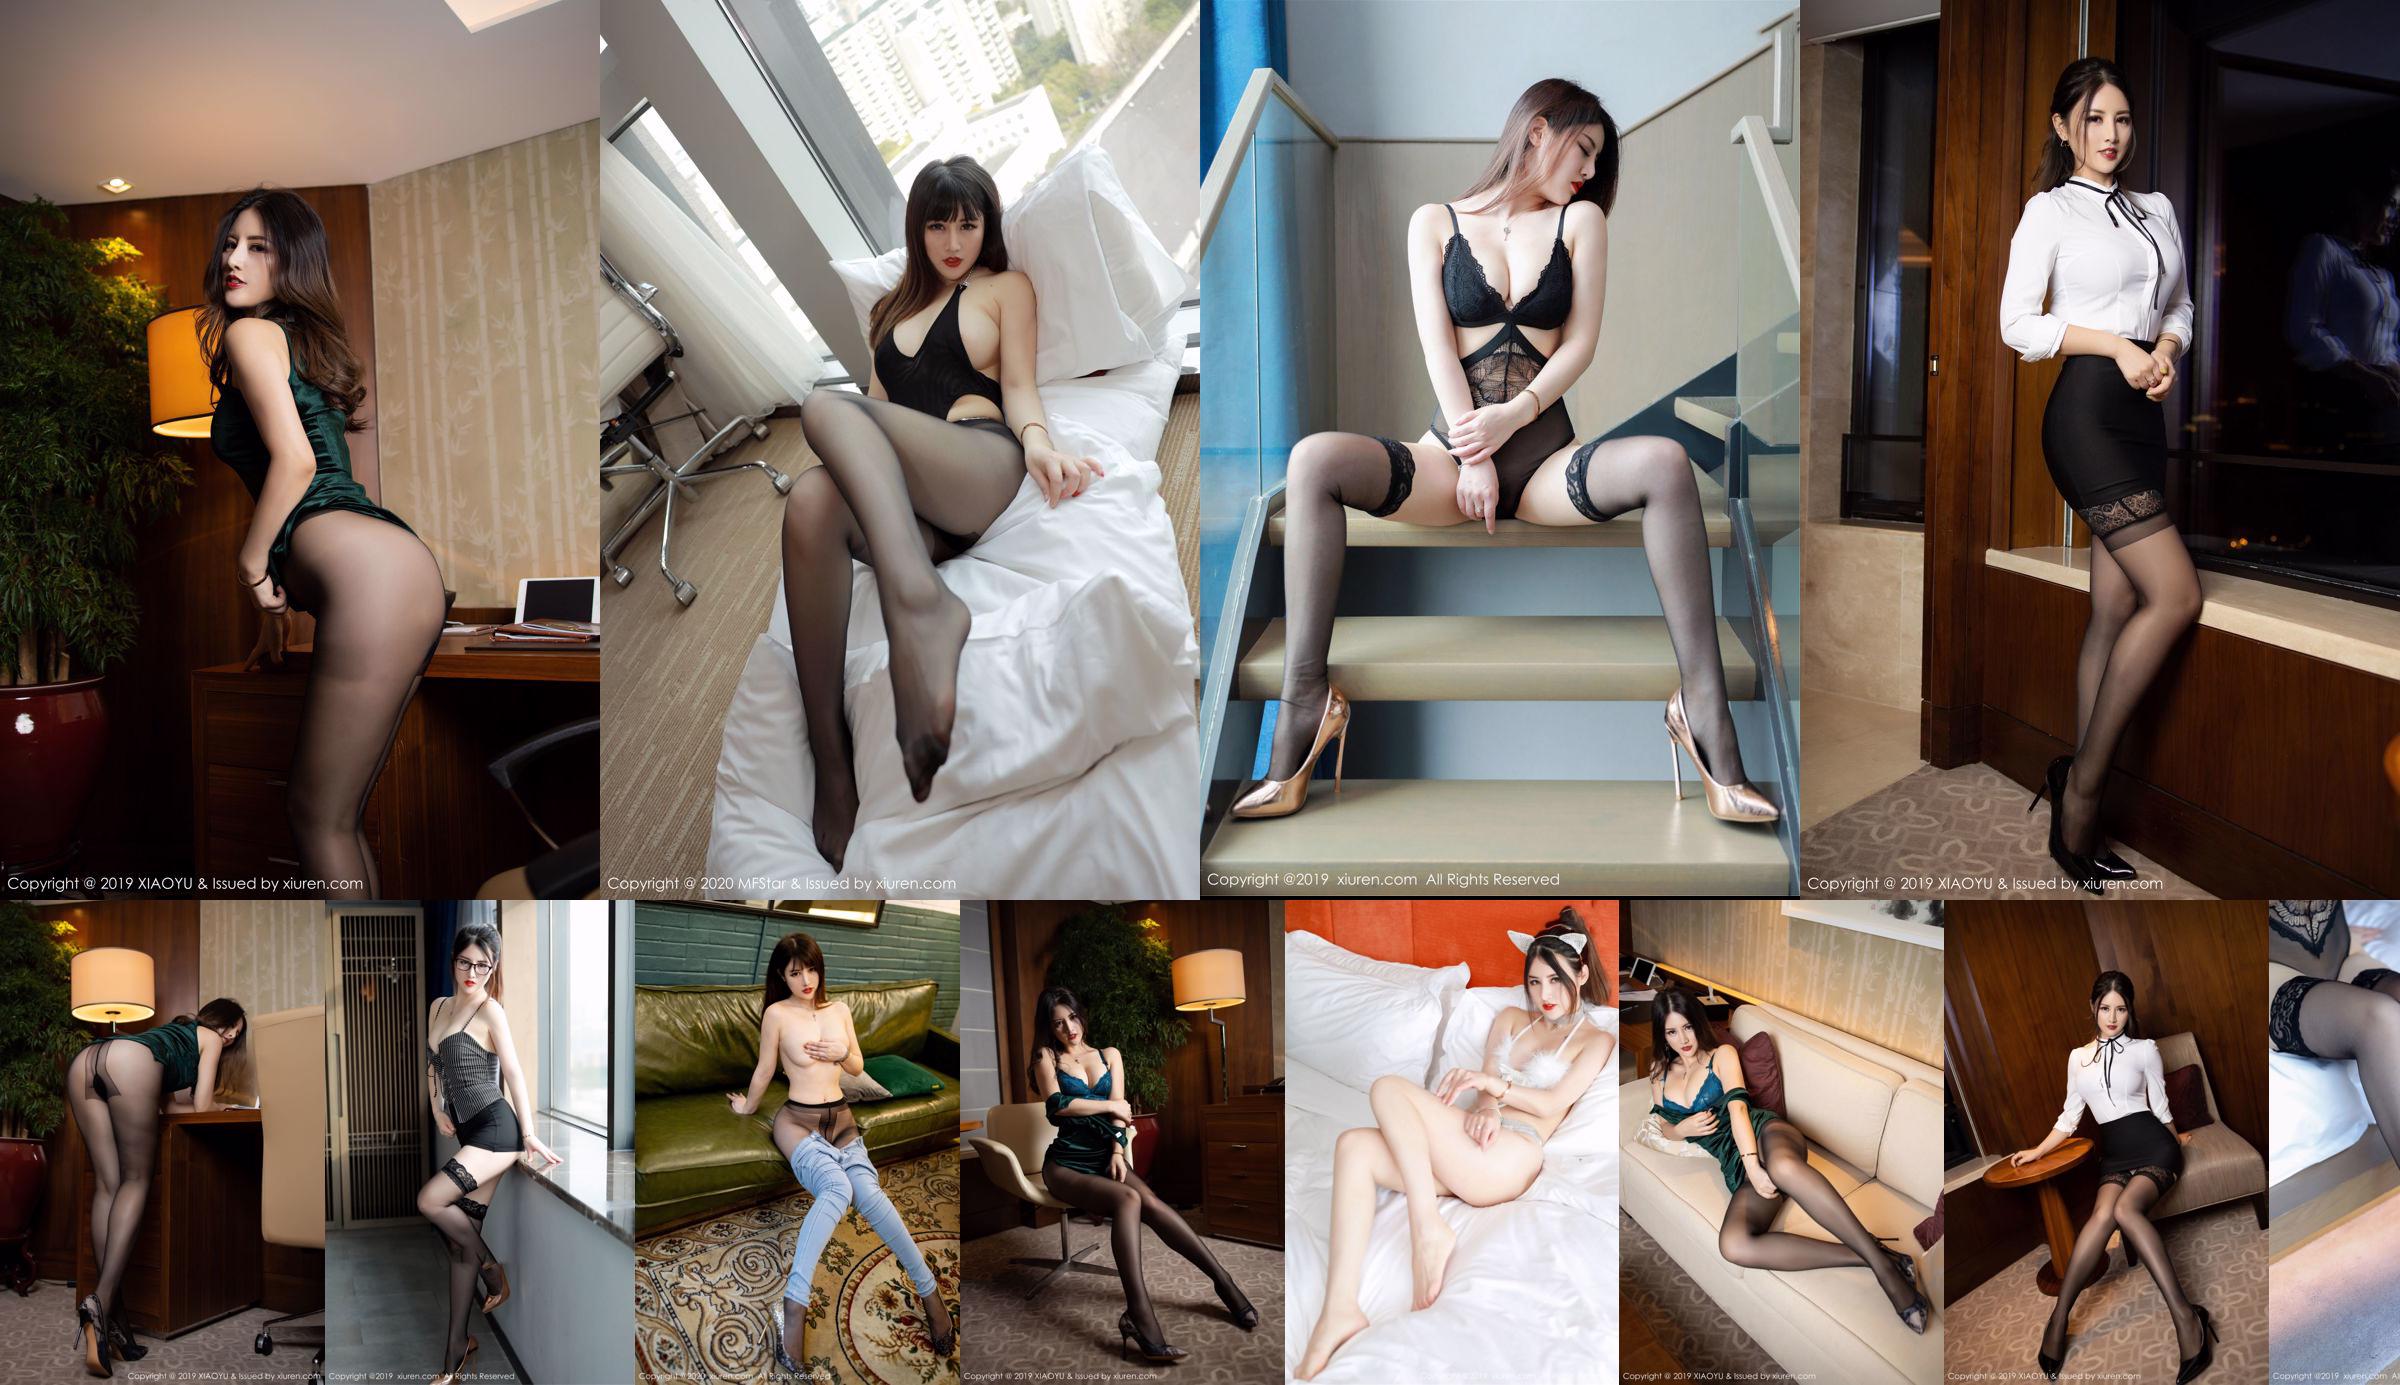 [Model Academy MFStar] Vol.313 Shishi kiki "Serie de vestidos de apertura delgada y alta" No.126e37 Página 1